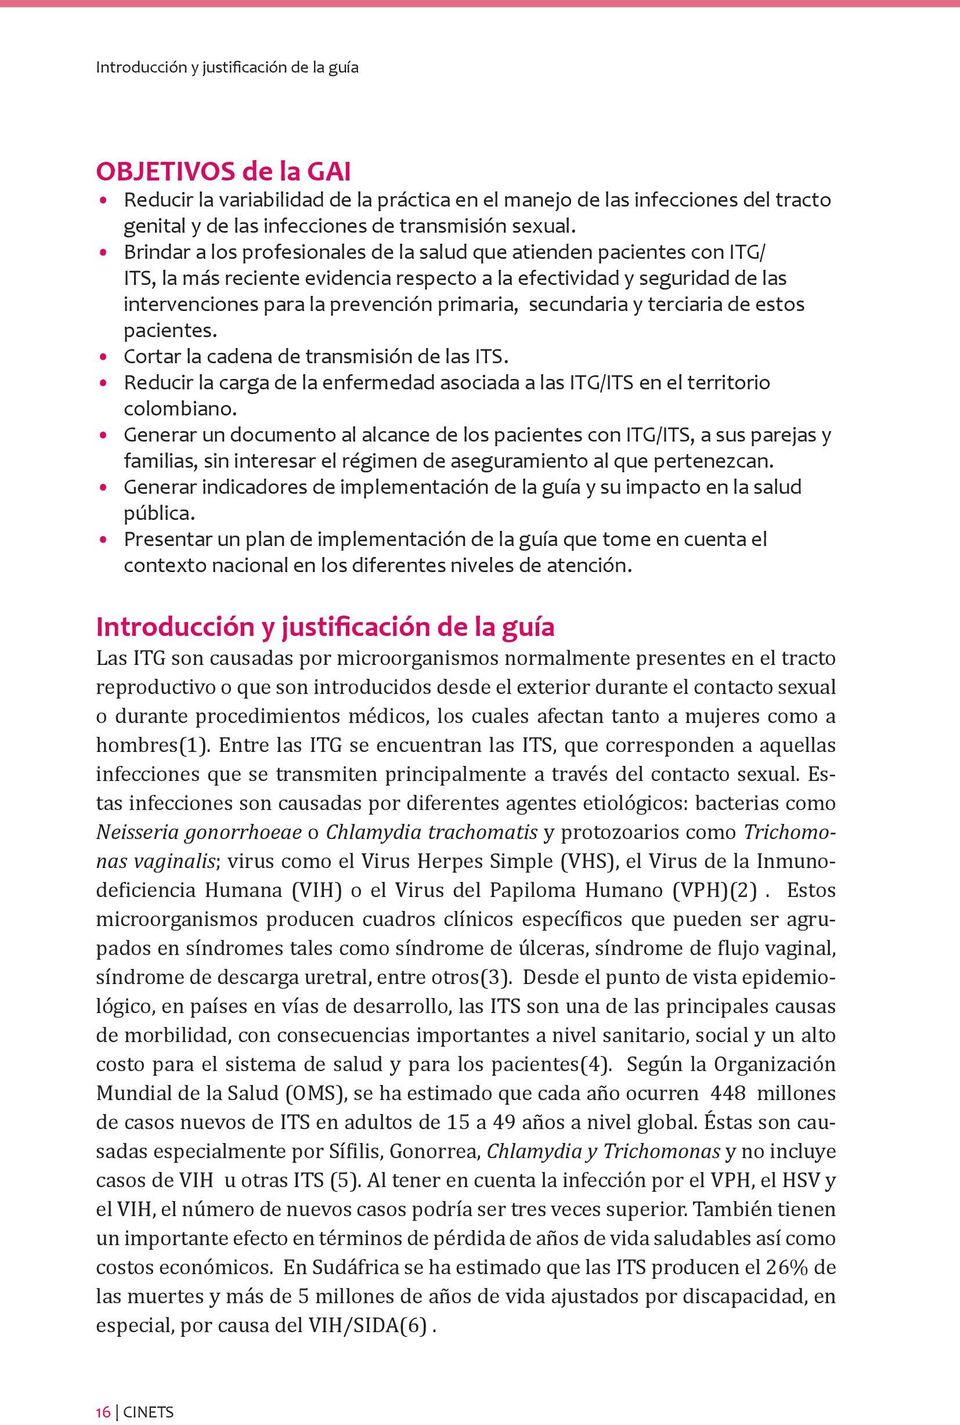 secundaria y terciaria de estos pacientes. Cortar la cadena de transmisión de las ITS. Reducir la carga de la enfermedad asociada a las ITG/ITS en el territorio colombiano.